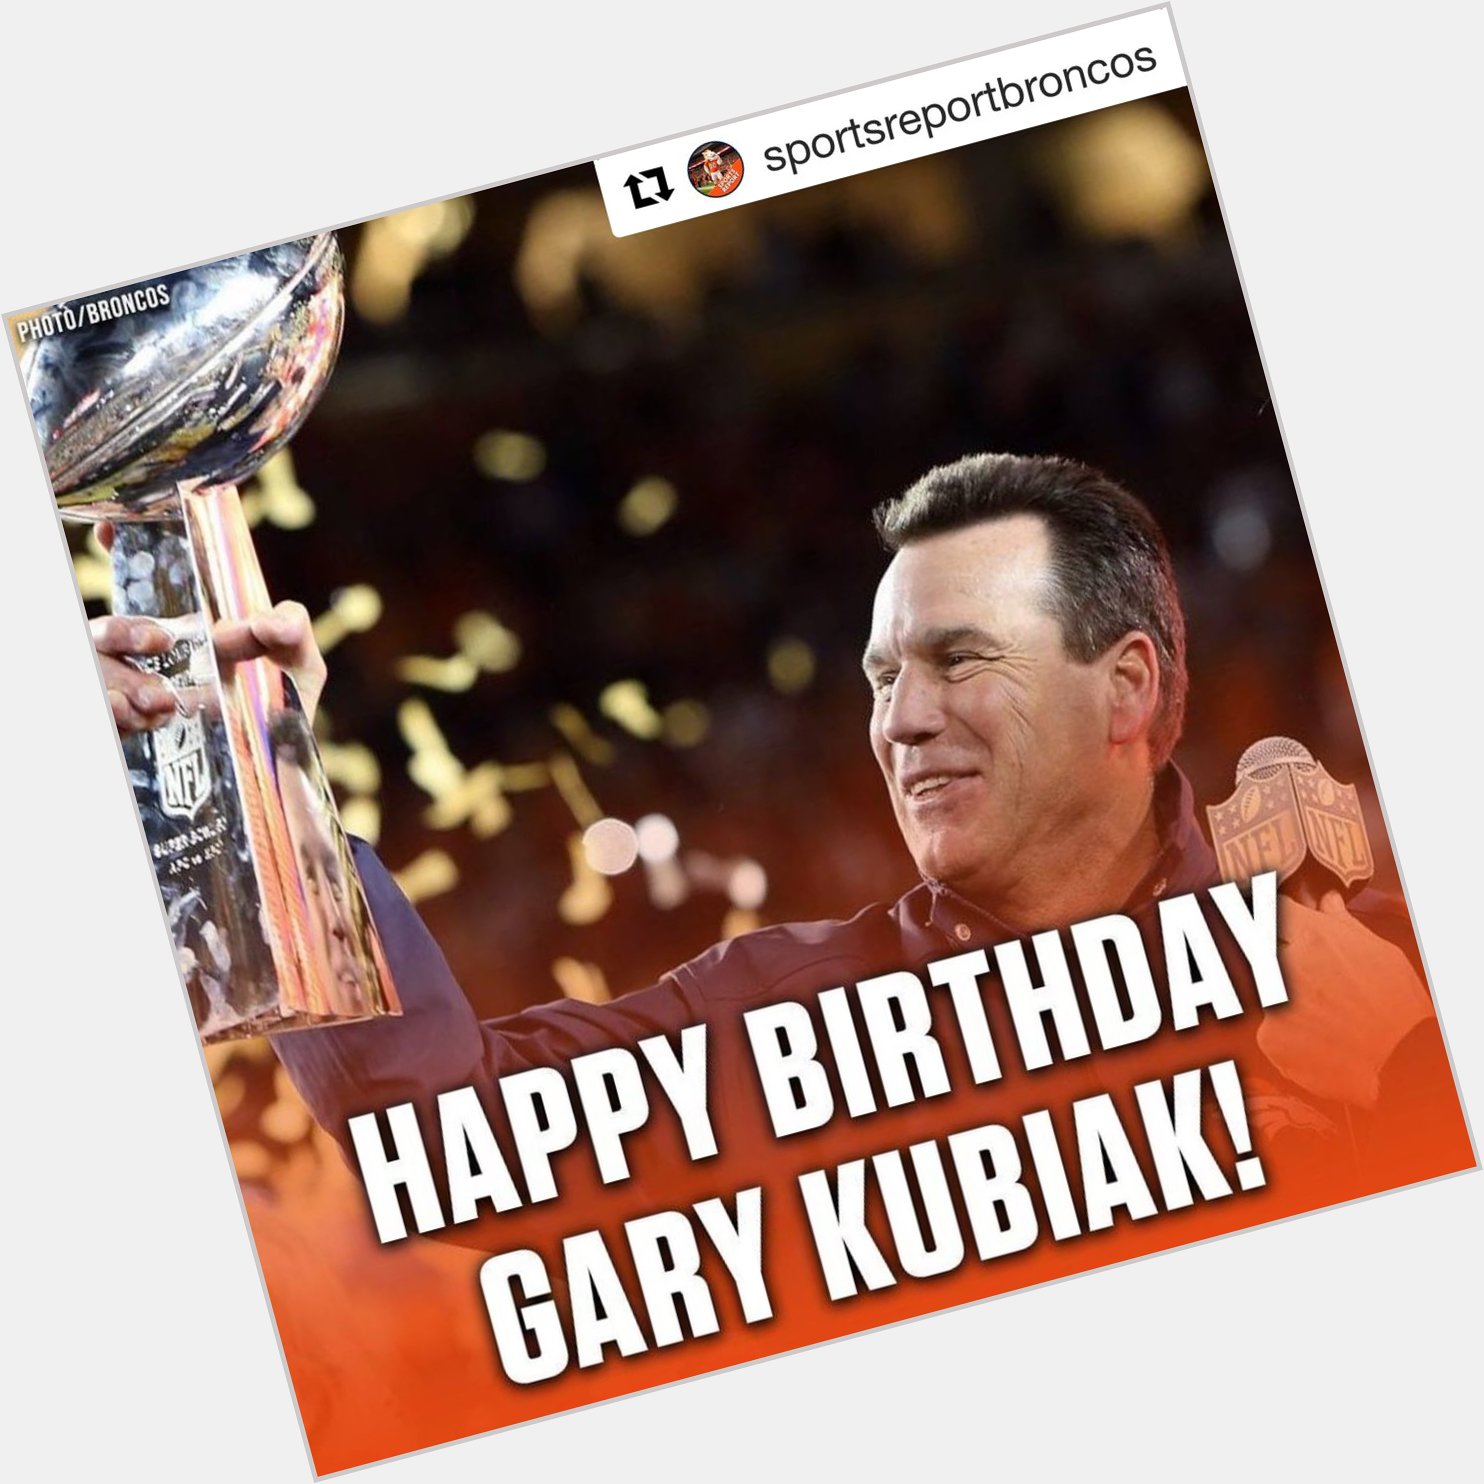  happy birthday to Gary Kubiak!! 